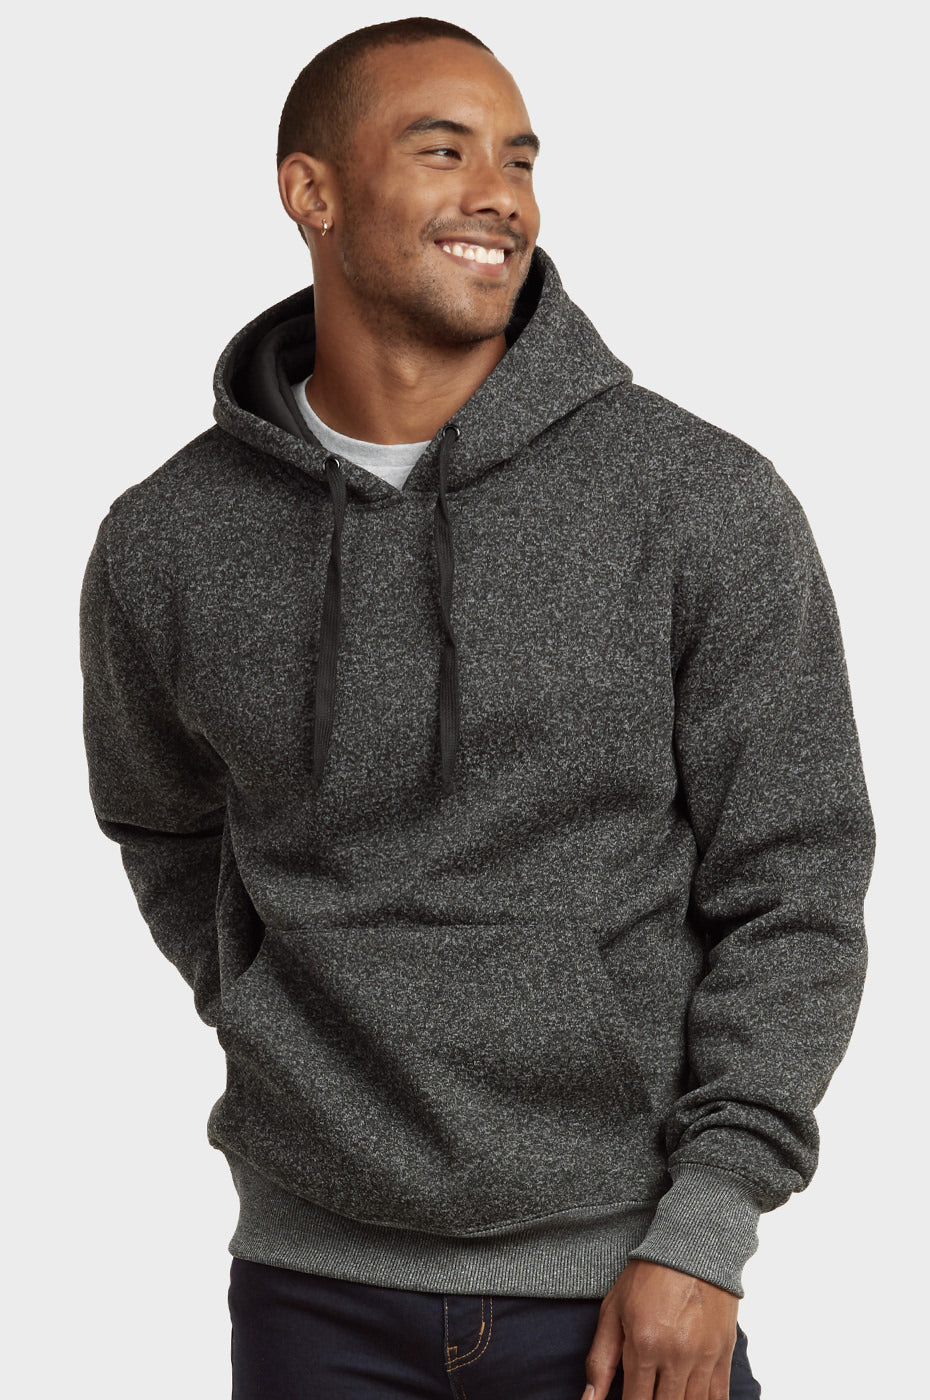 Knocker Men's Medium Weight Fleece Pullover Hoodie Sweater Top –